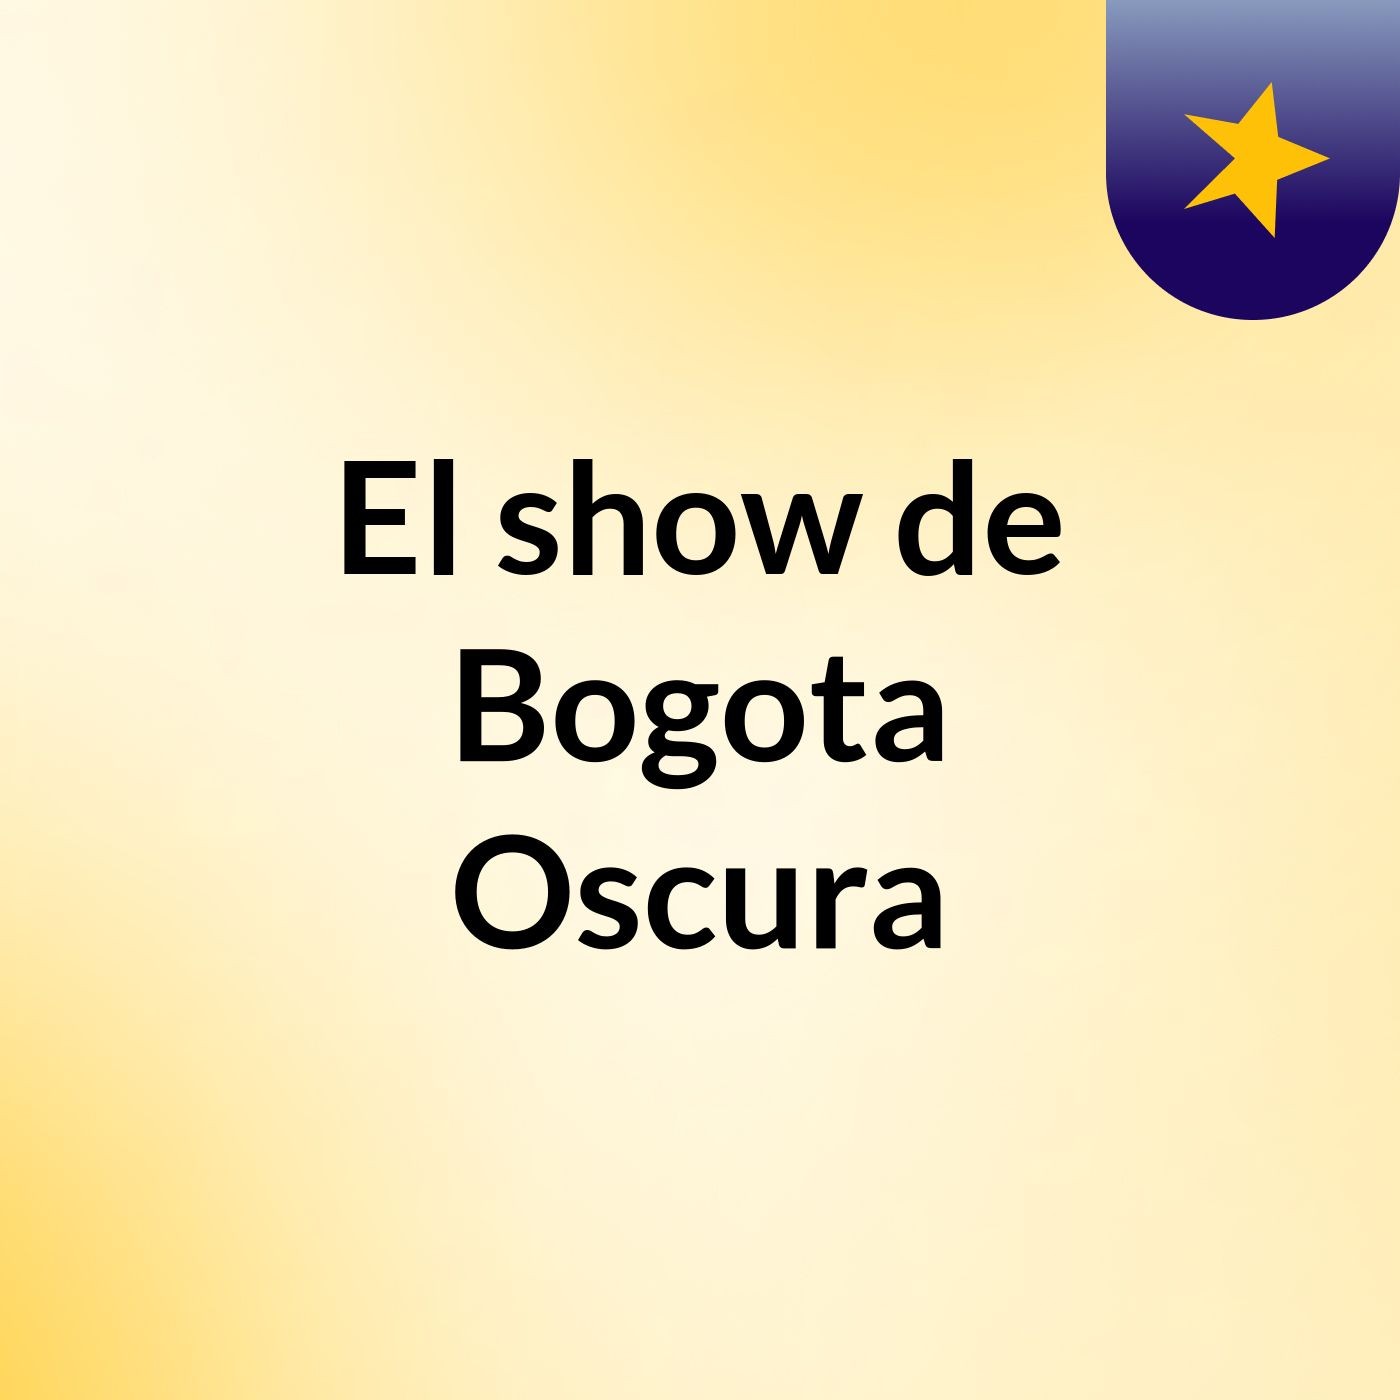 El show de Bogota Oscura